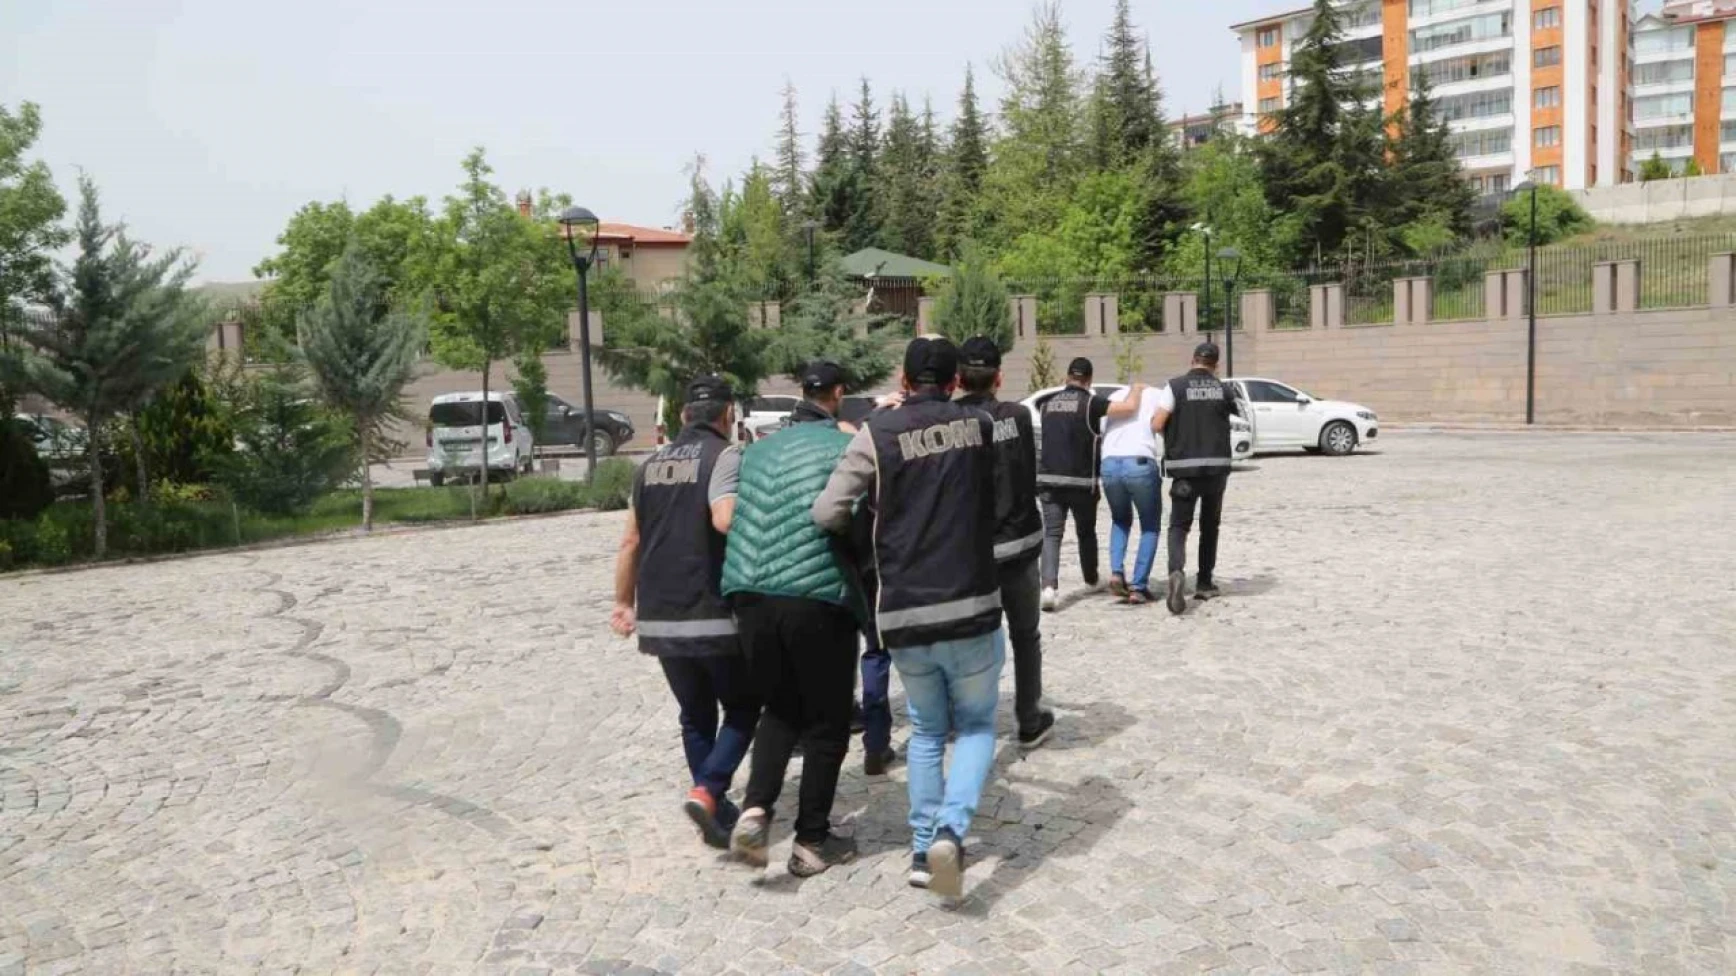 Elazığ'da tefecilik operasyonu: 3 gözaltı